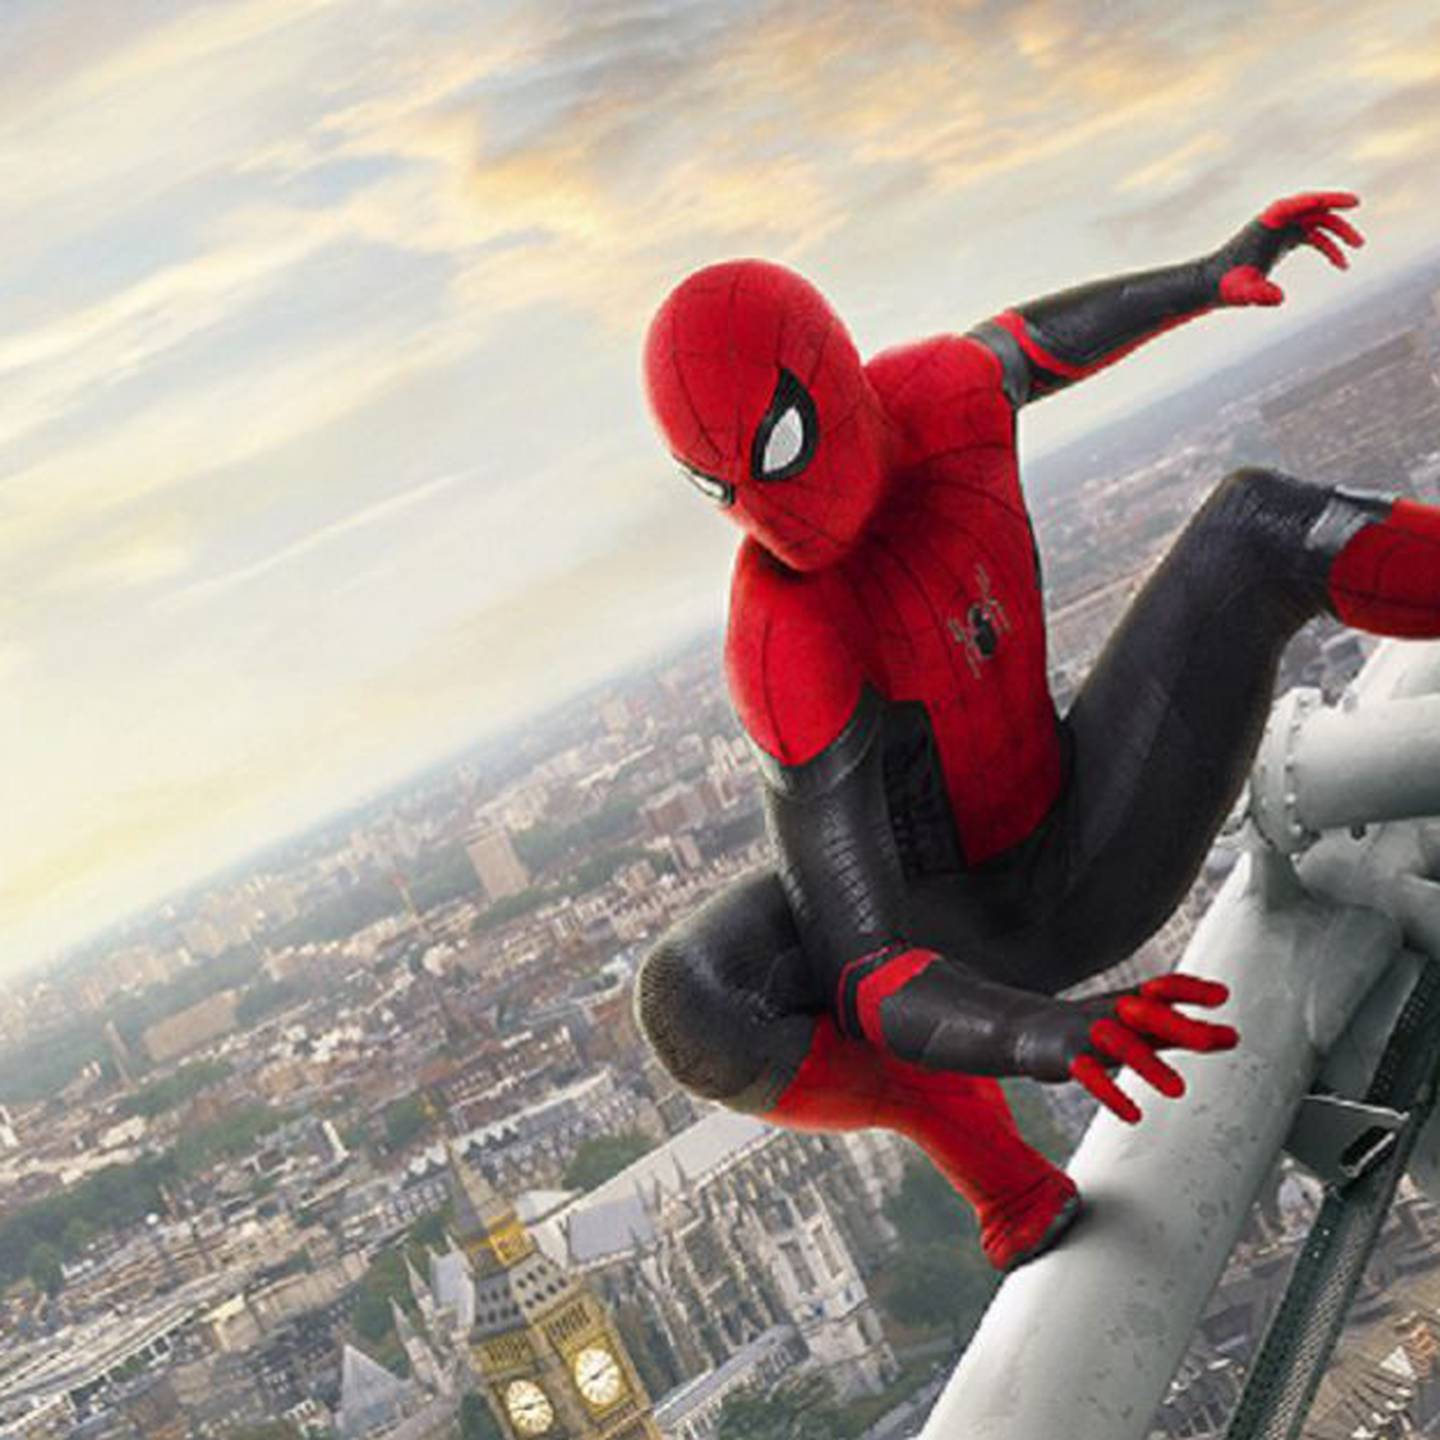 Récord taquillero de Spider-man ¡'Lejos de casa' se convirtió en la película  más taquillera de Spider-man! : ¡'Lejos de casa' se convirtió en la película  más taquillera de Spider-man!